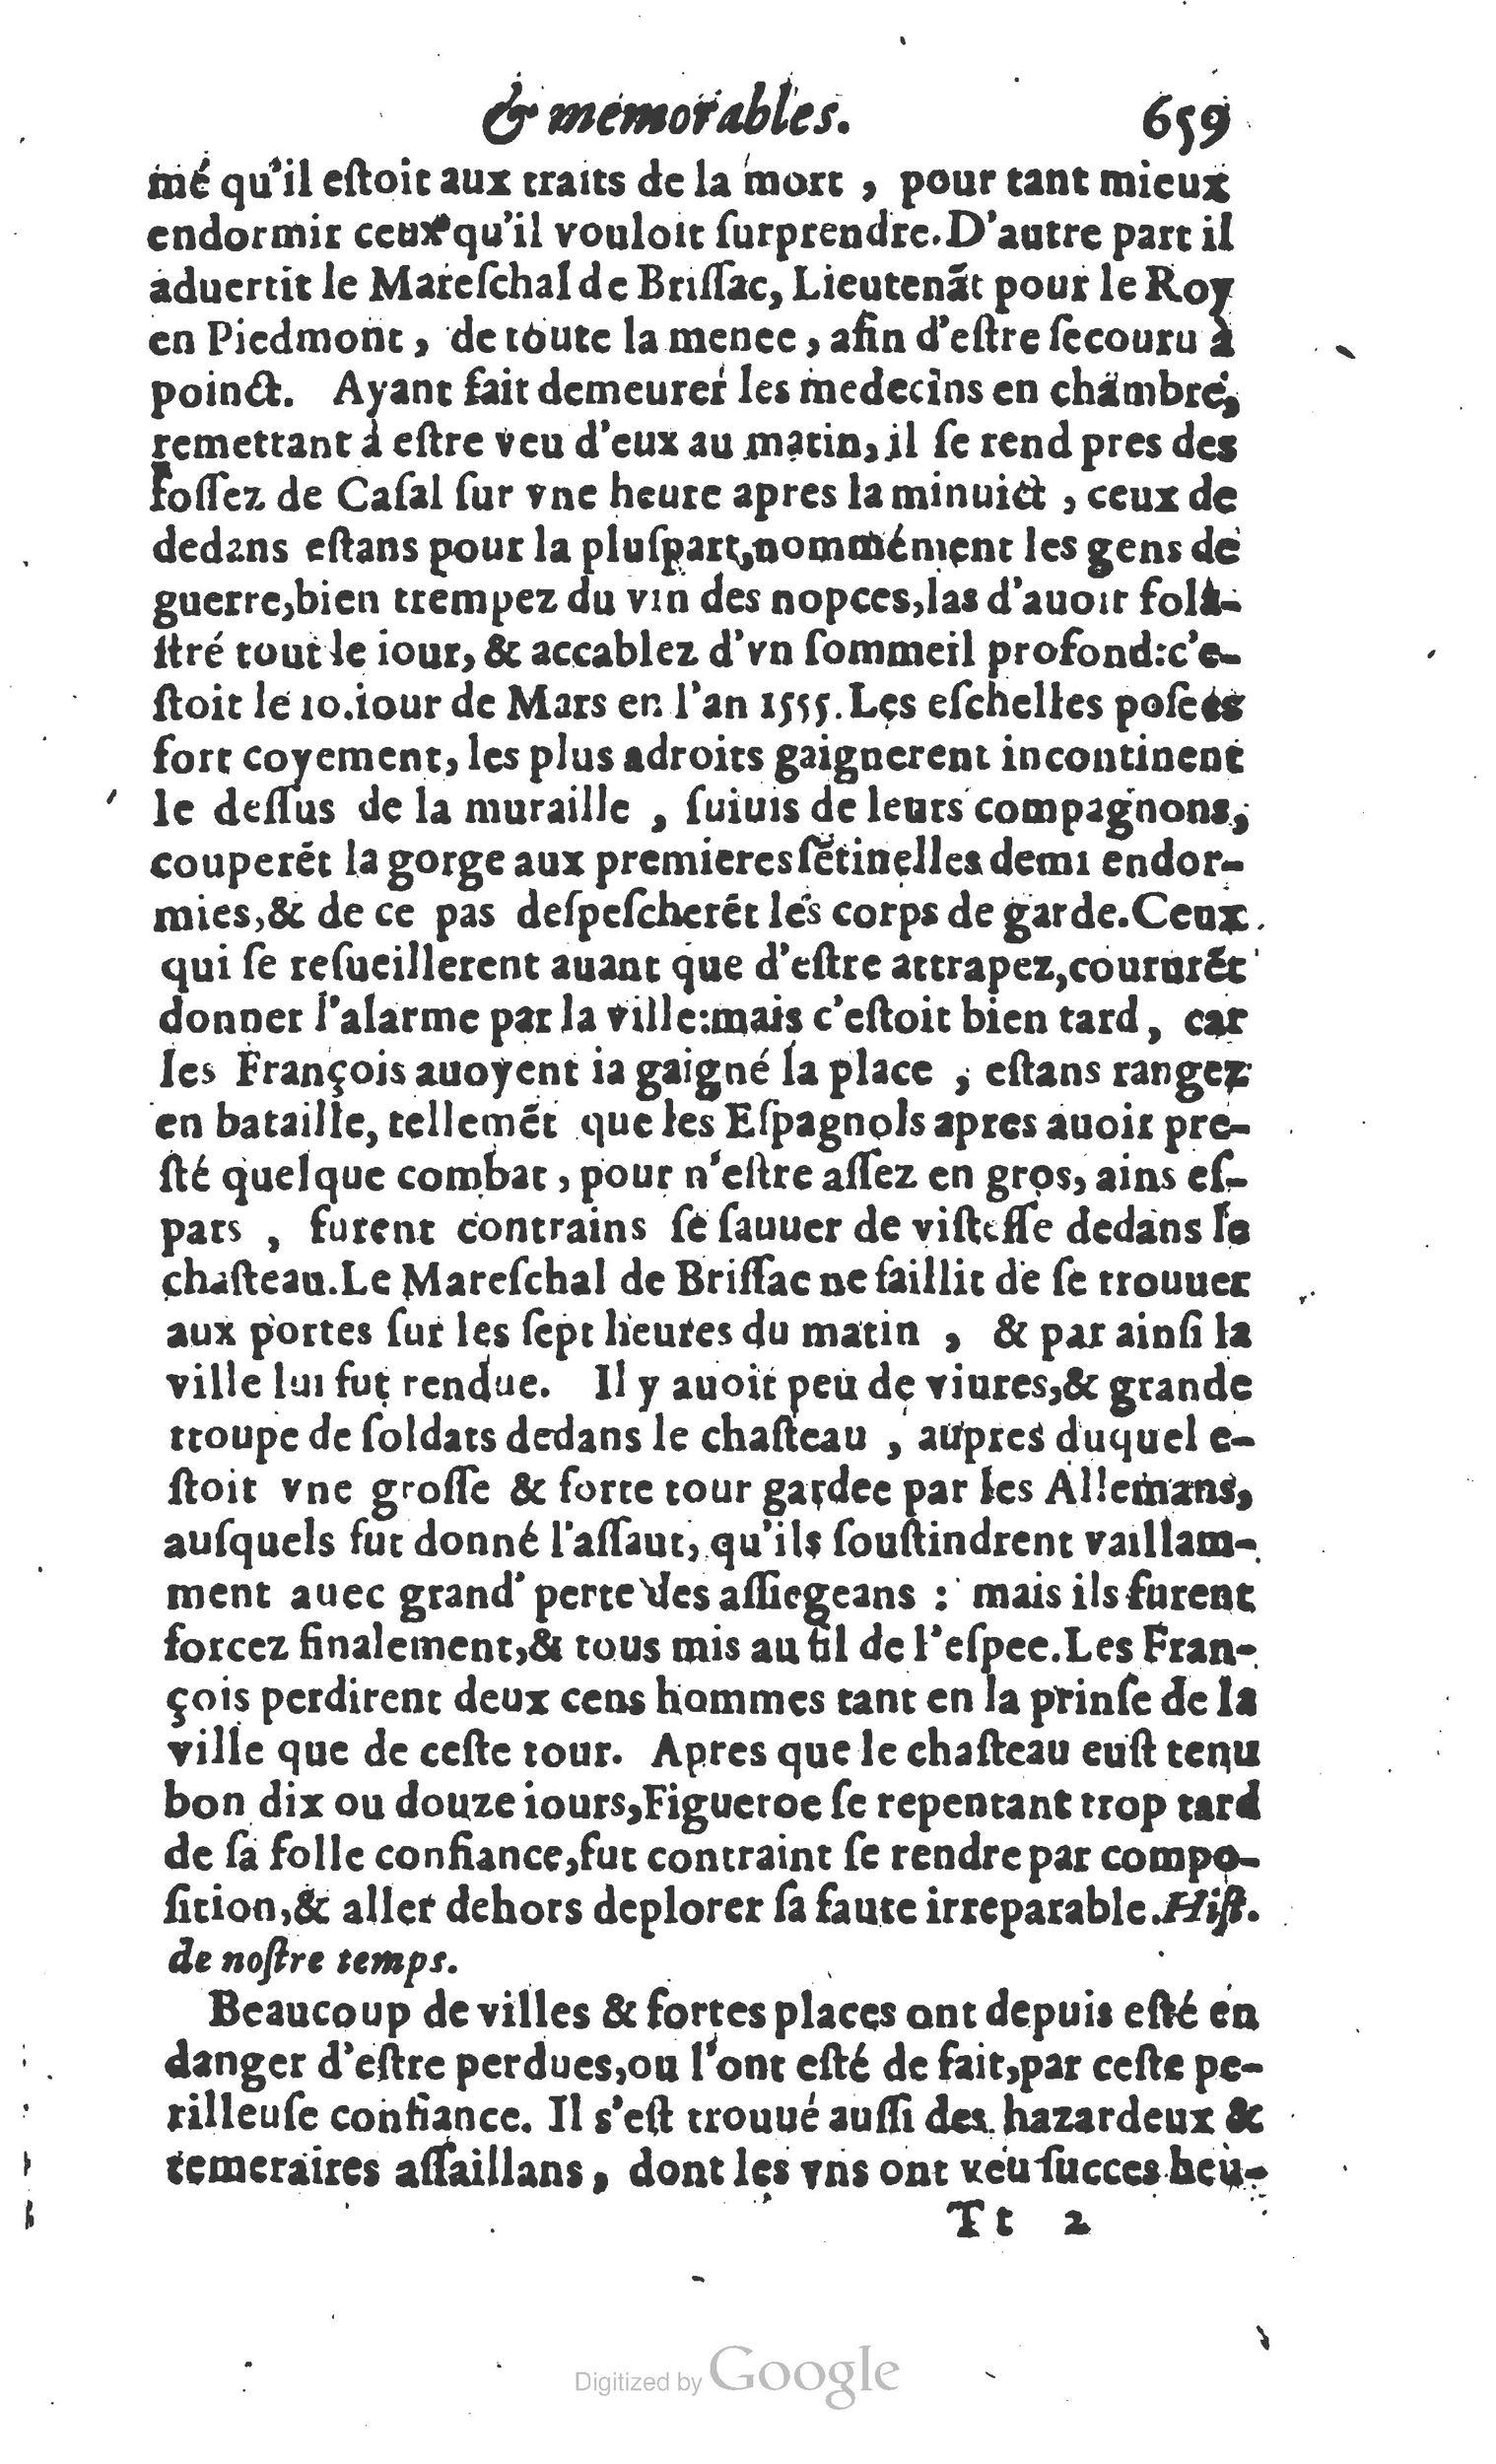 1610 Trésor d’histoires admirables et mémorables de nostre temps Marceau Princeton_Page_0680.jpg